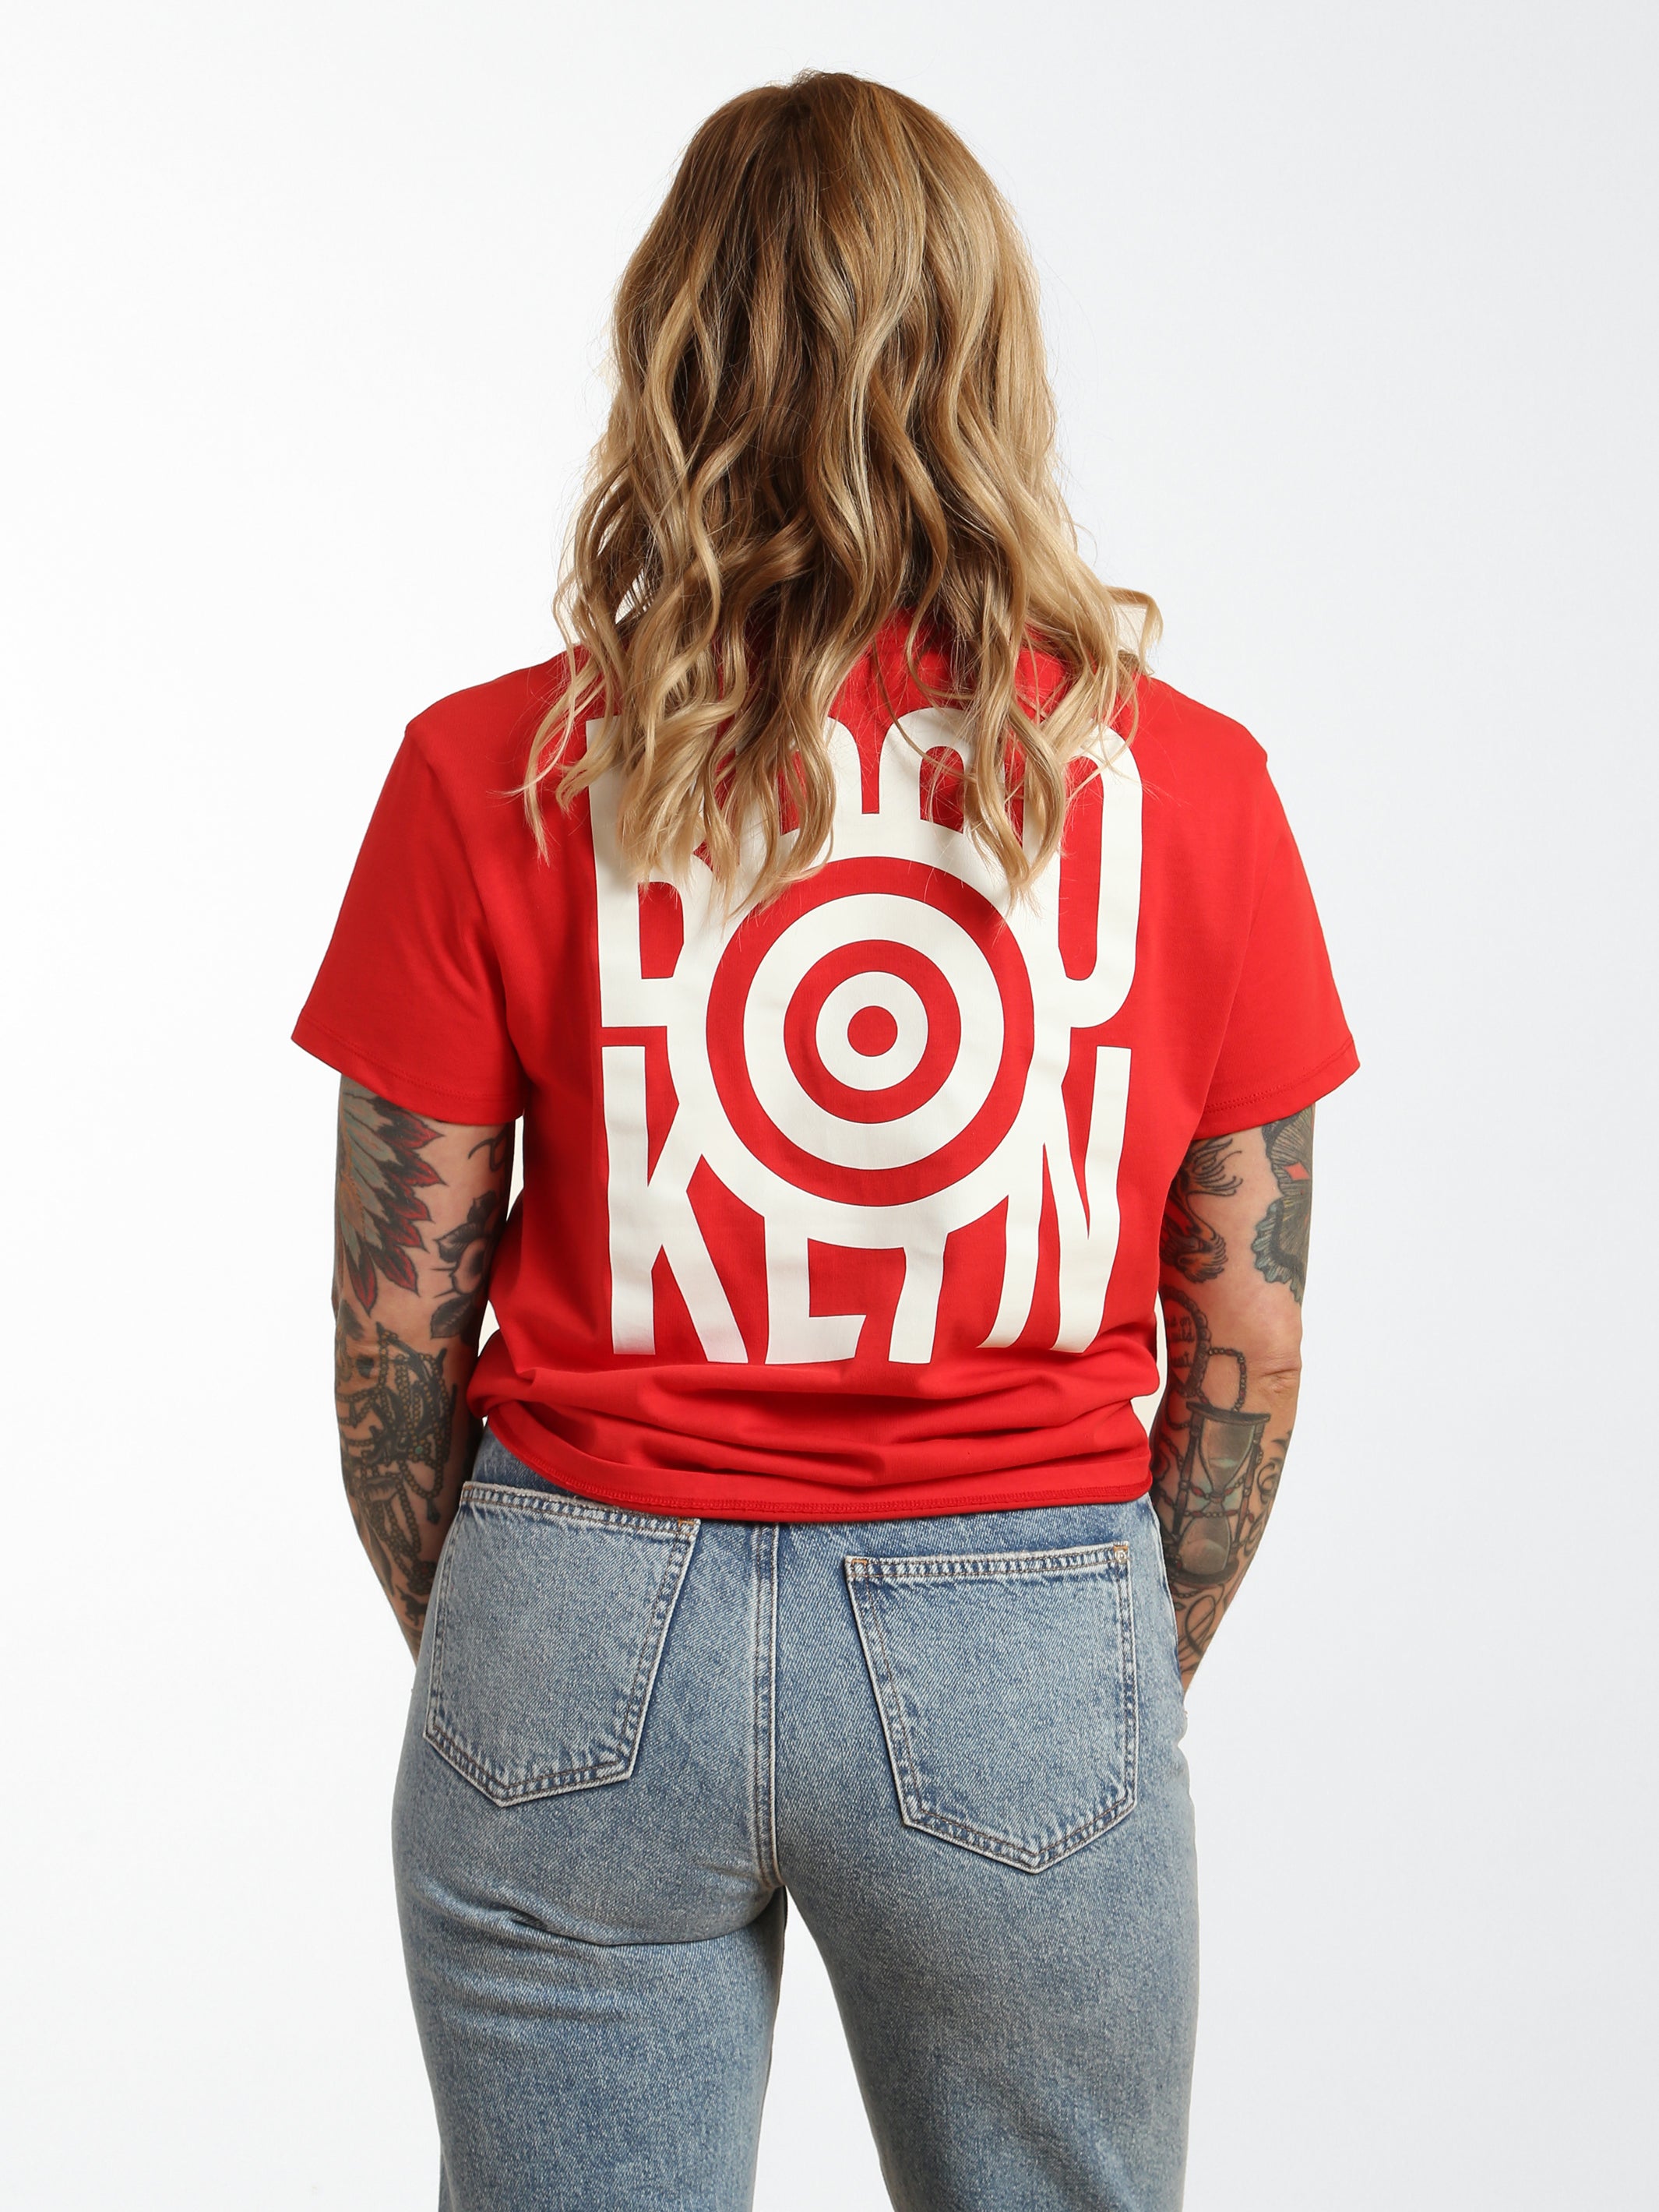 Women's Brooklyn Target T-shirt - BROOKLYN INDUSTRIES